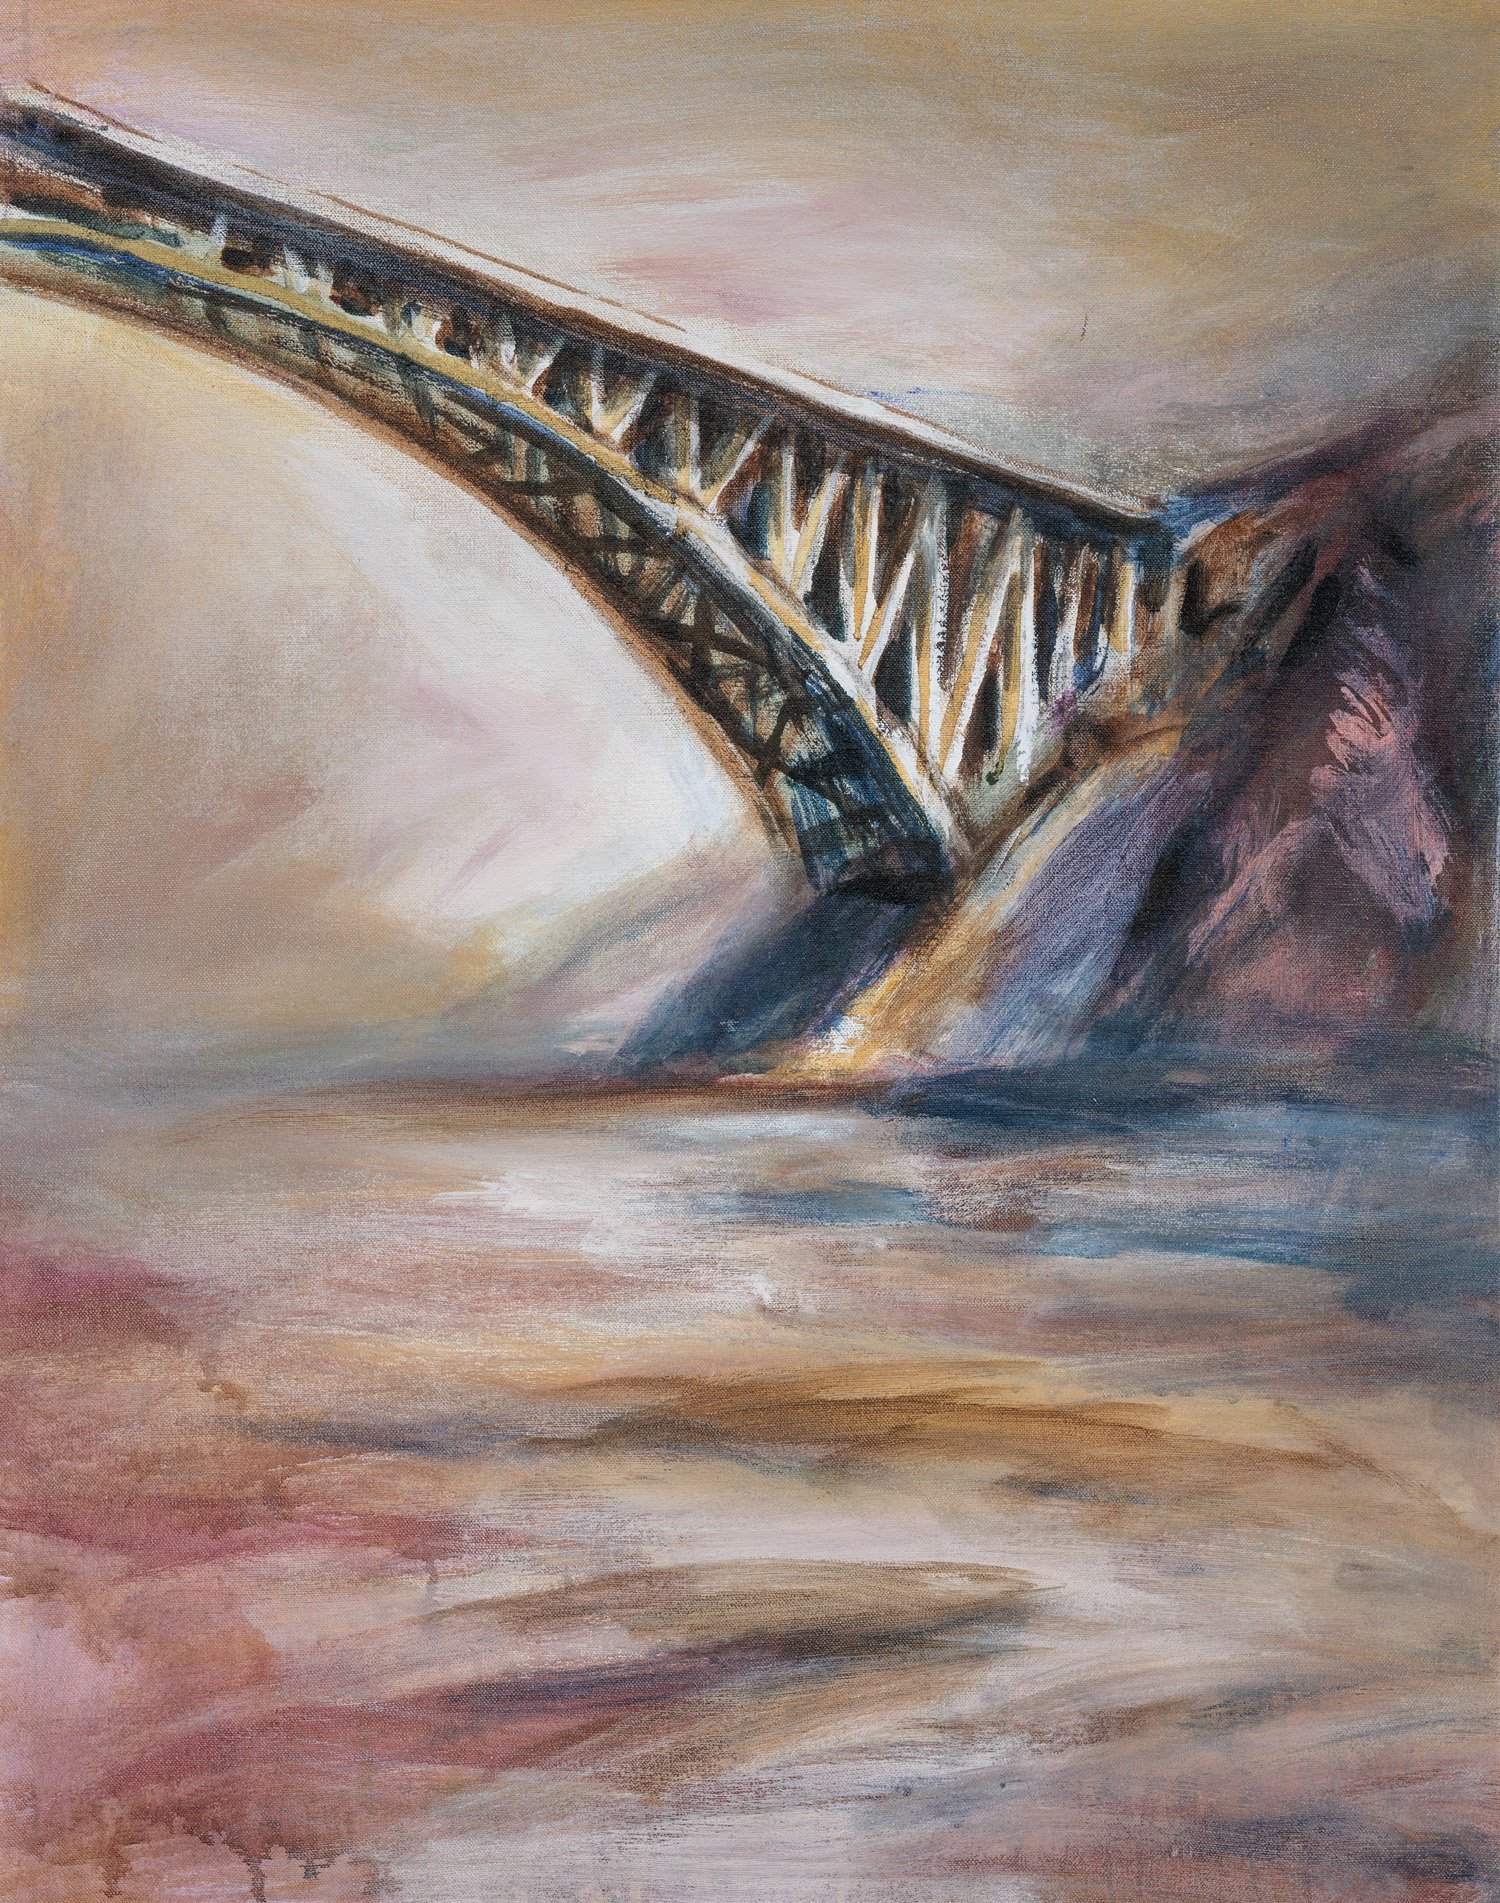 Reversing Falls Bridge, Saint John, NB - 30” x 24”